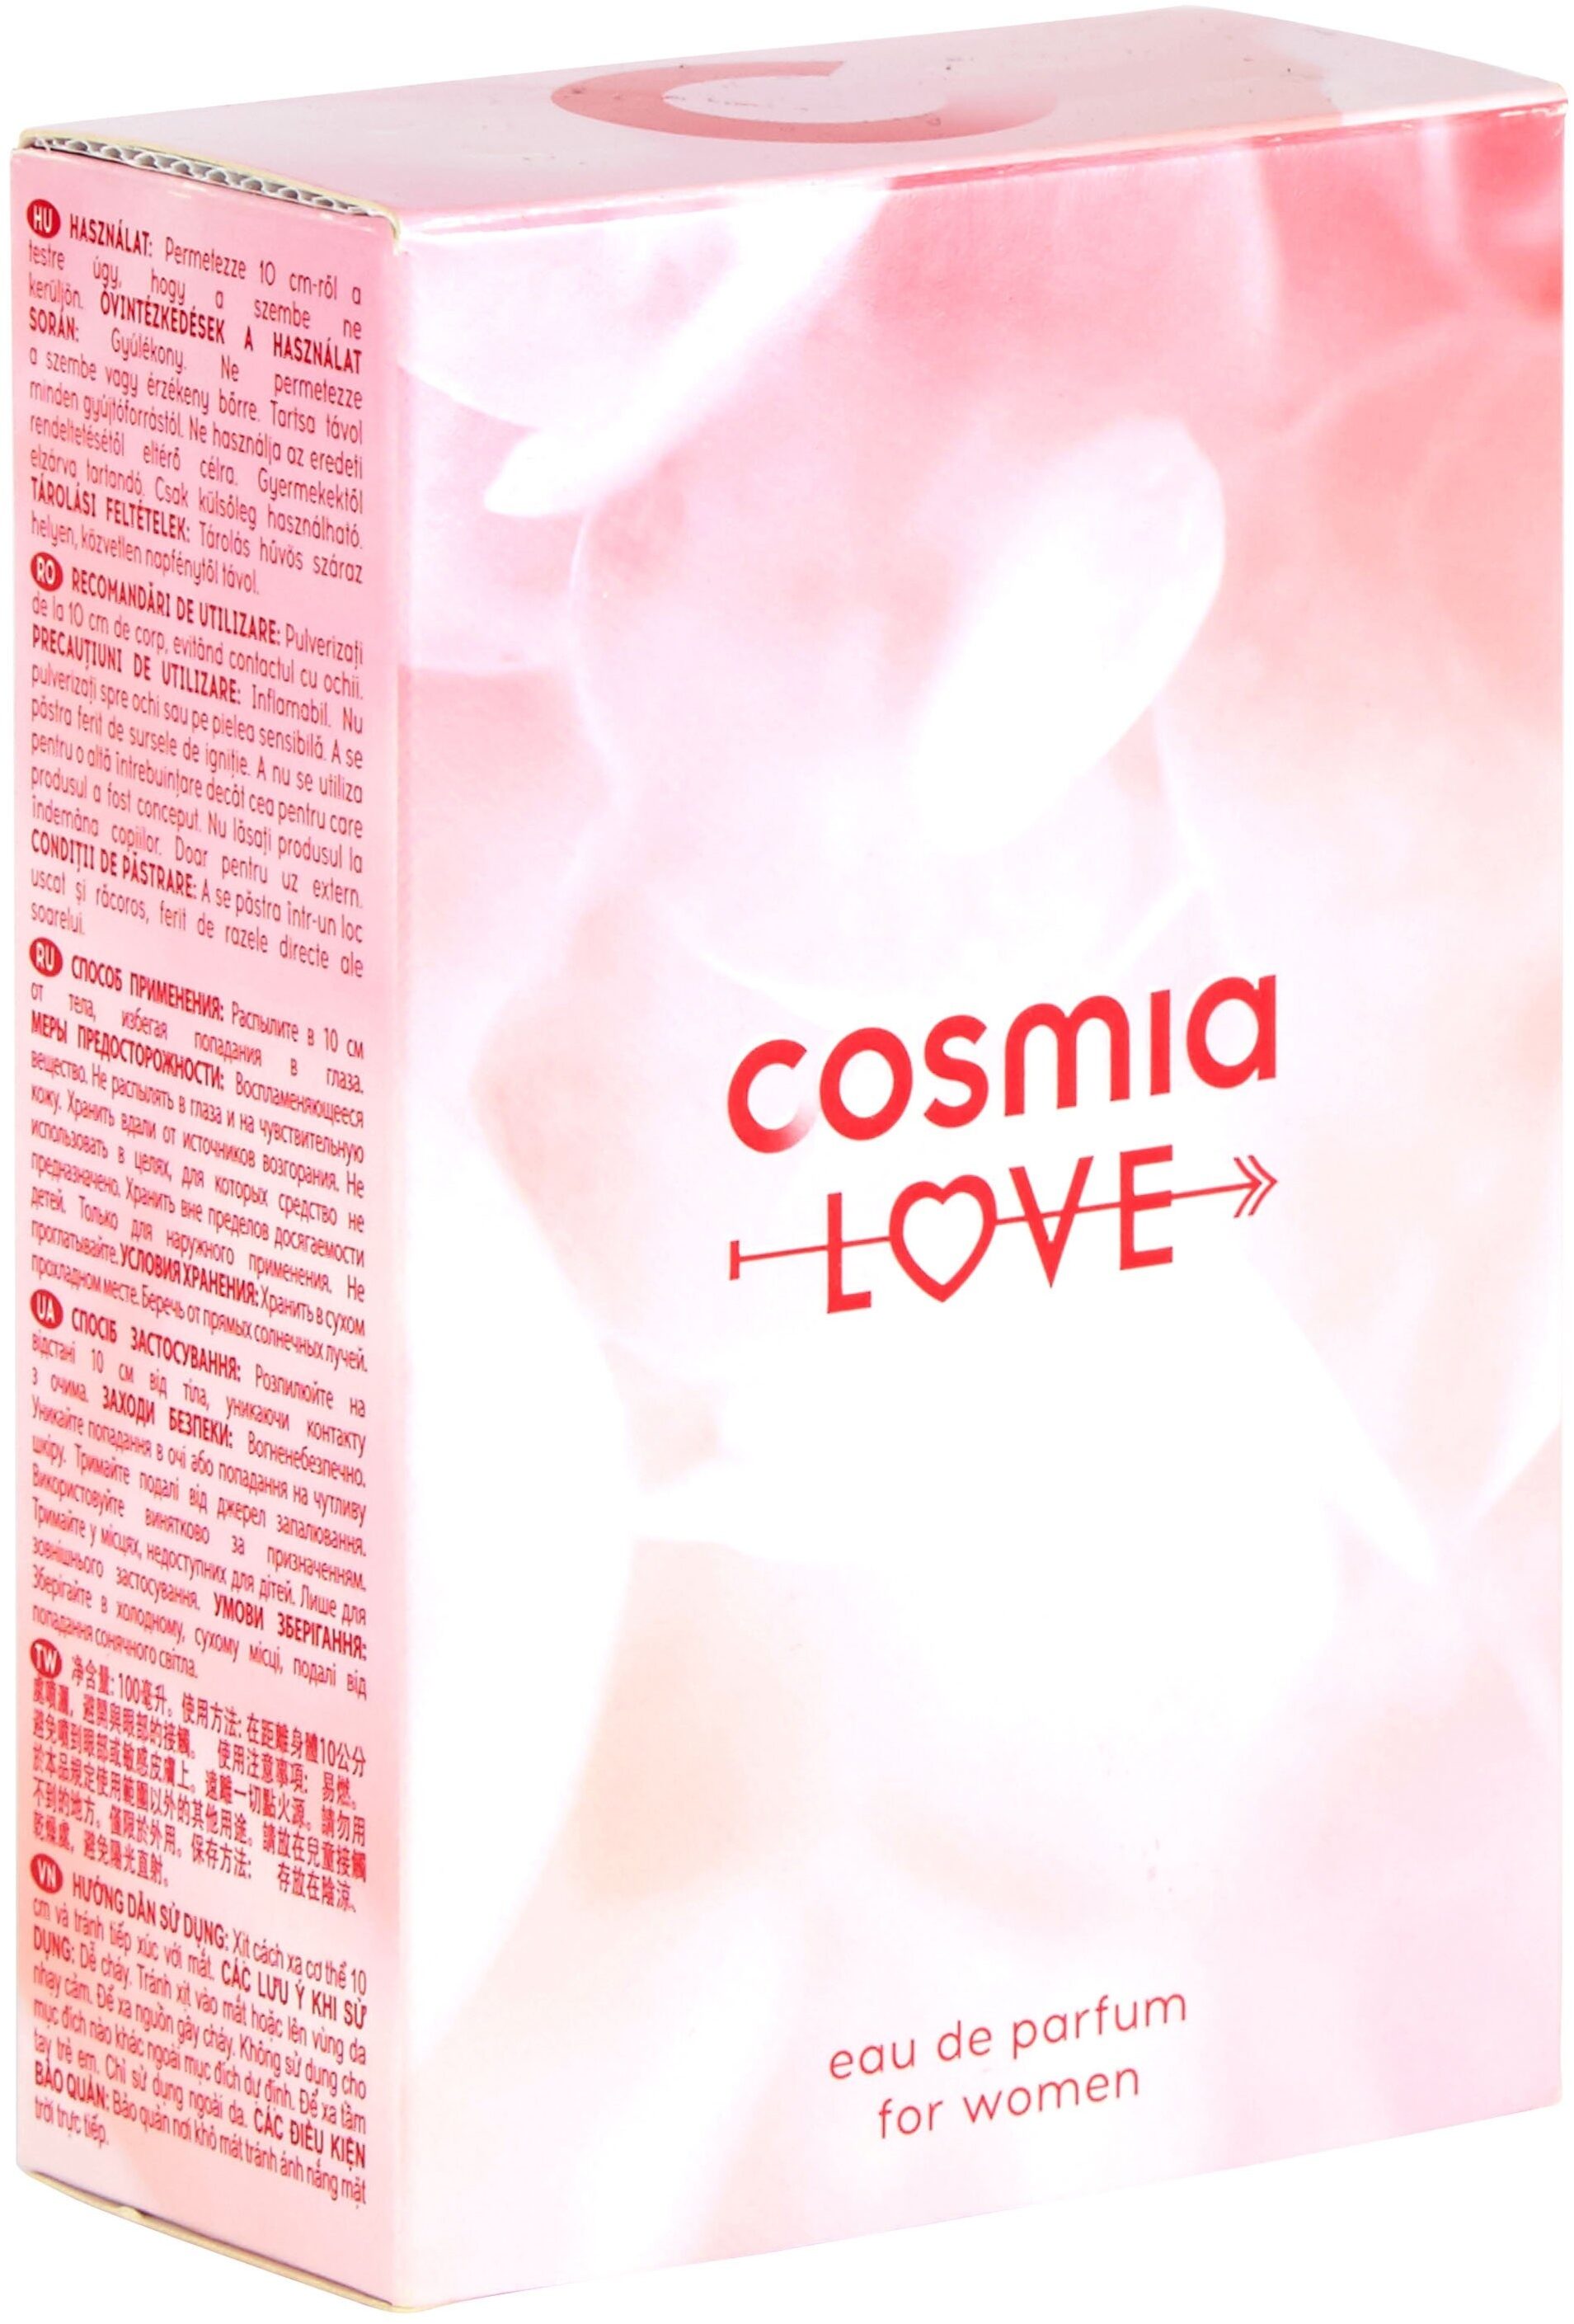 Cosmia - eau de parfum - cosmia amour - pour femme - 100 ml - Produit - fr